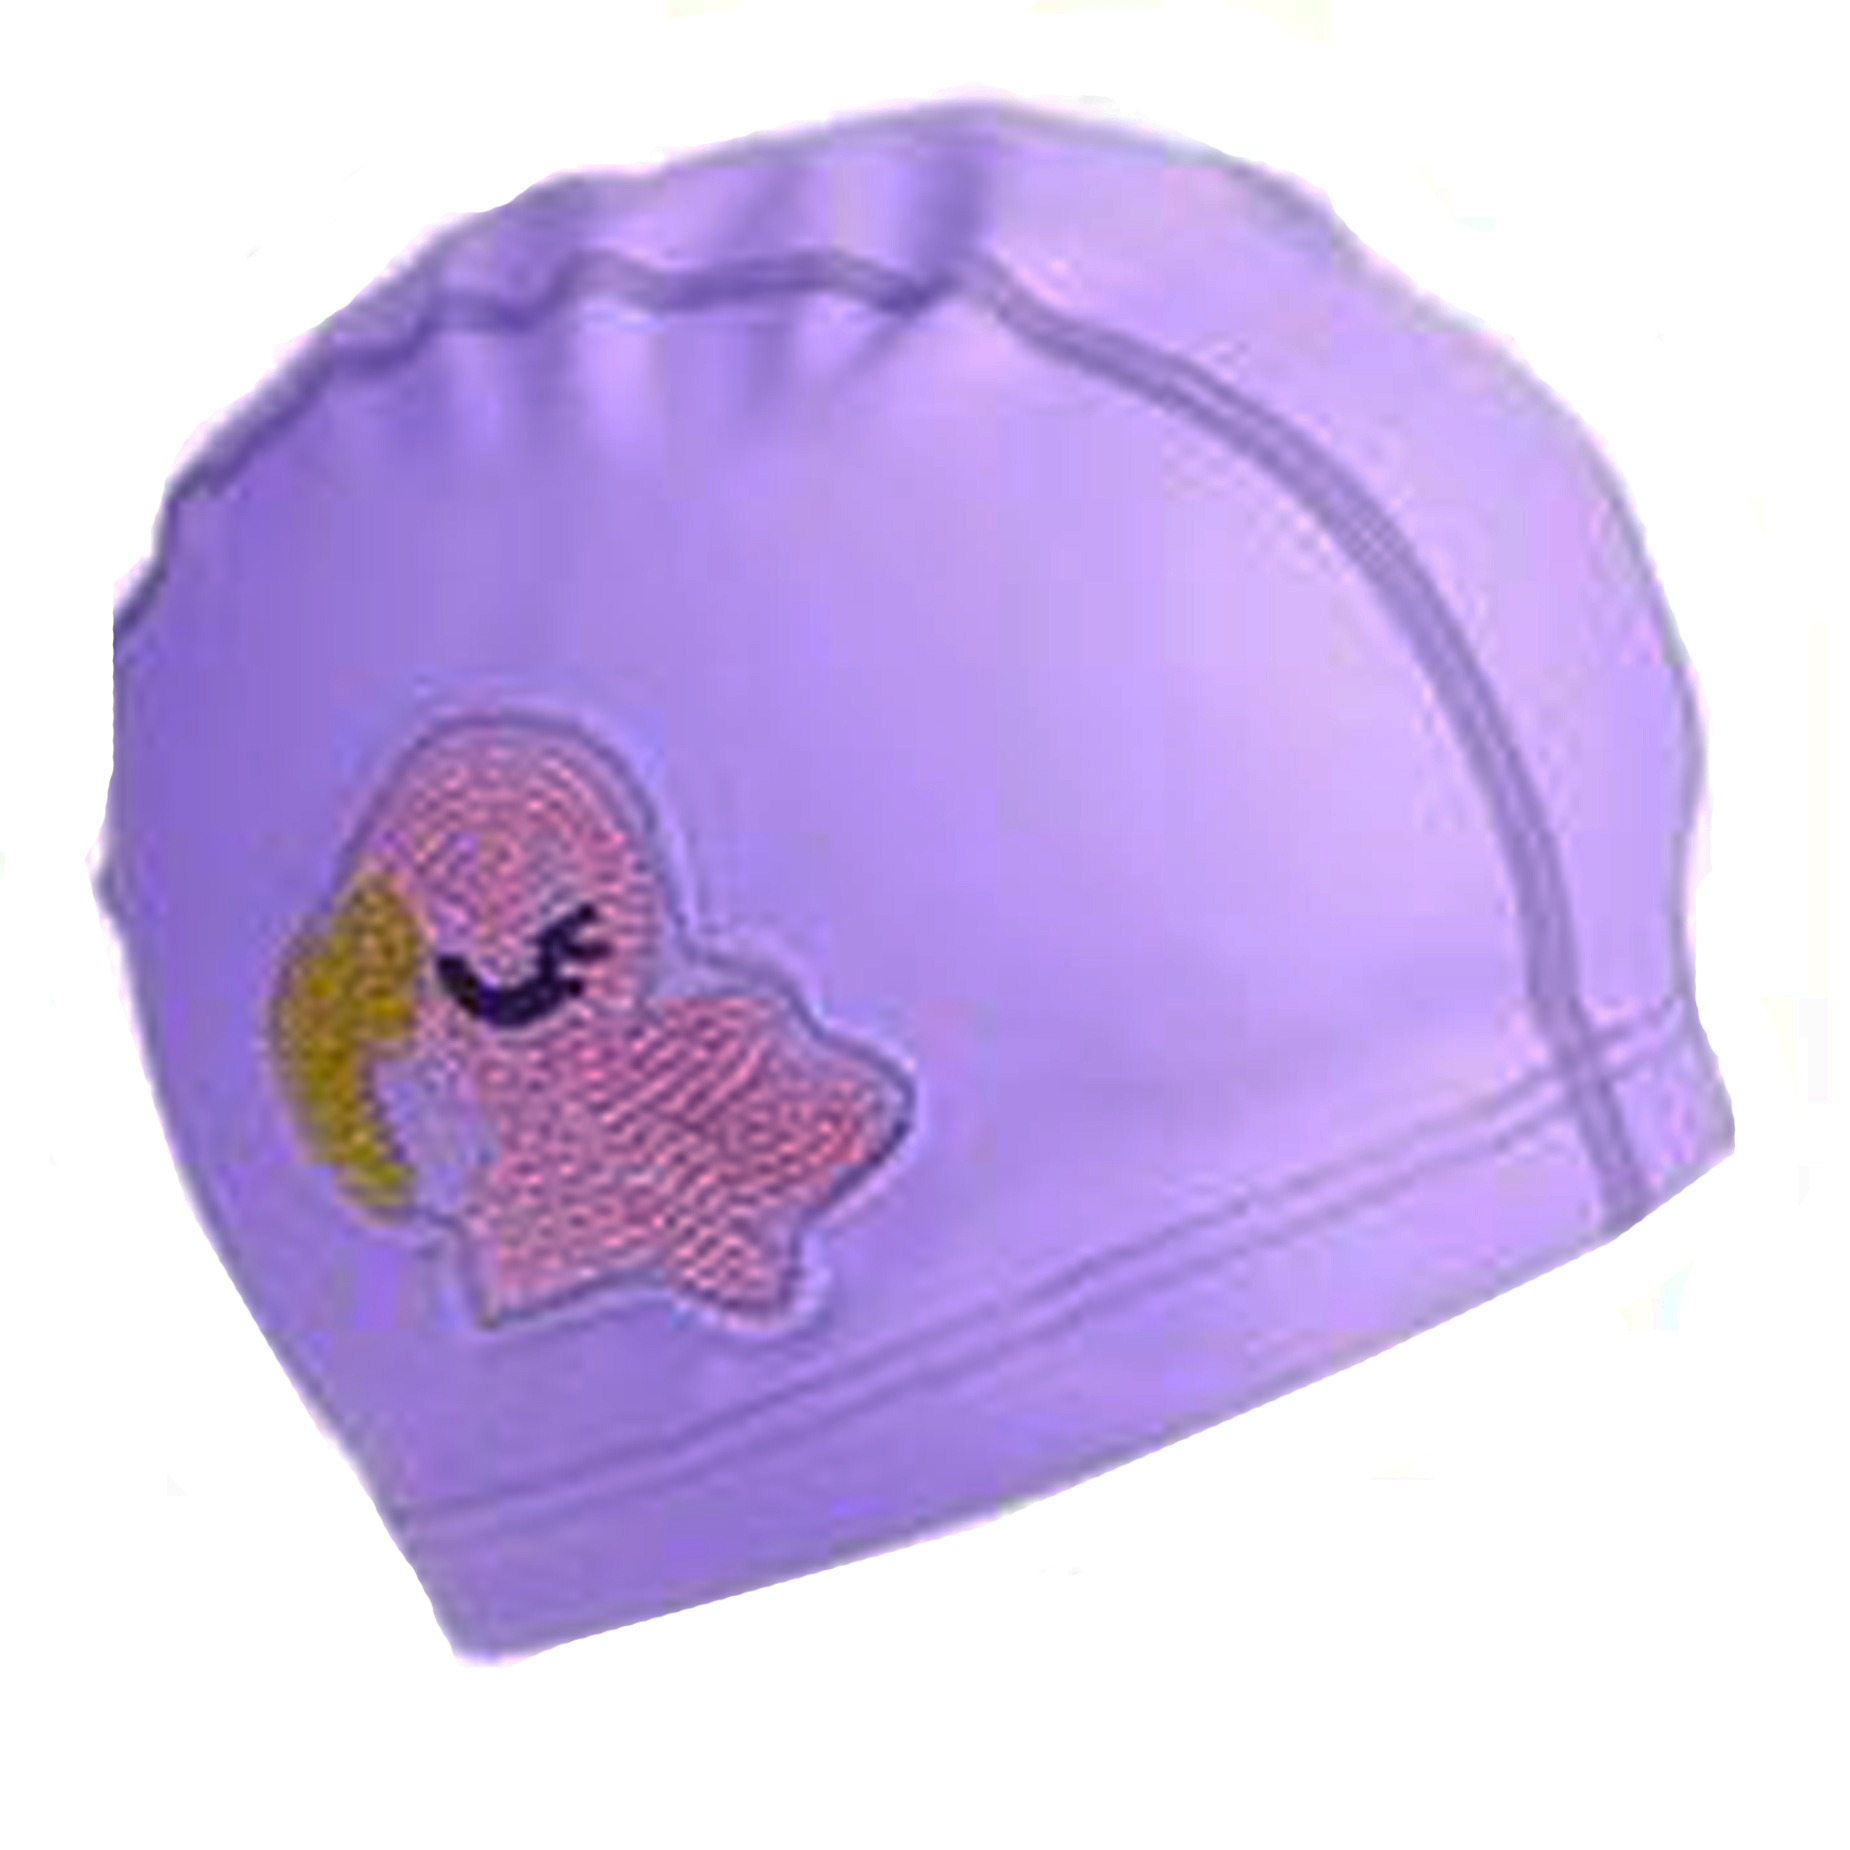 Flamingo swim cap